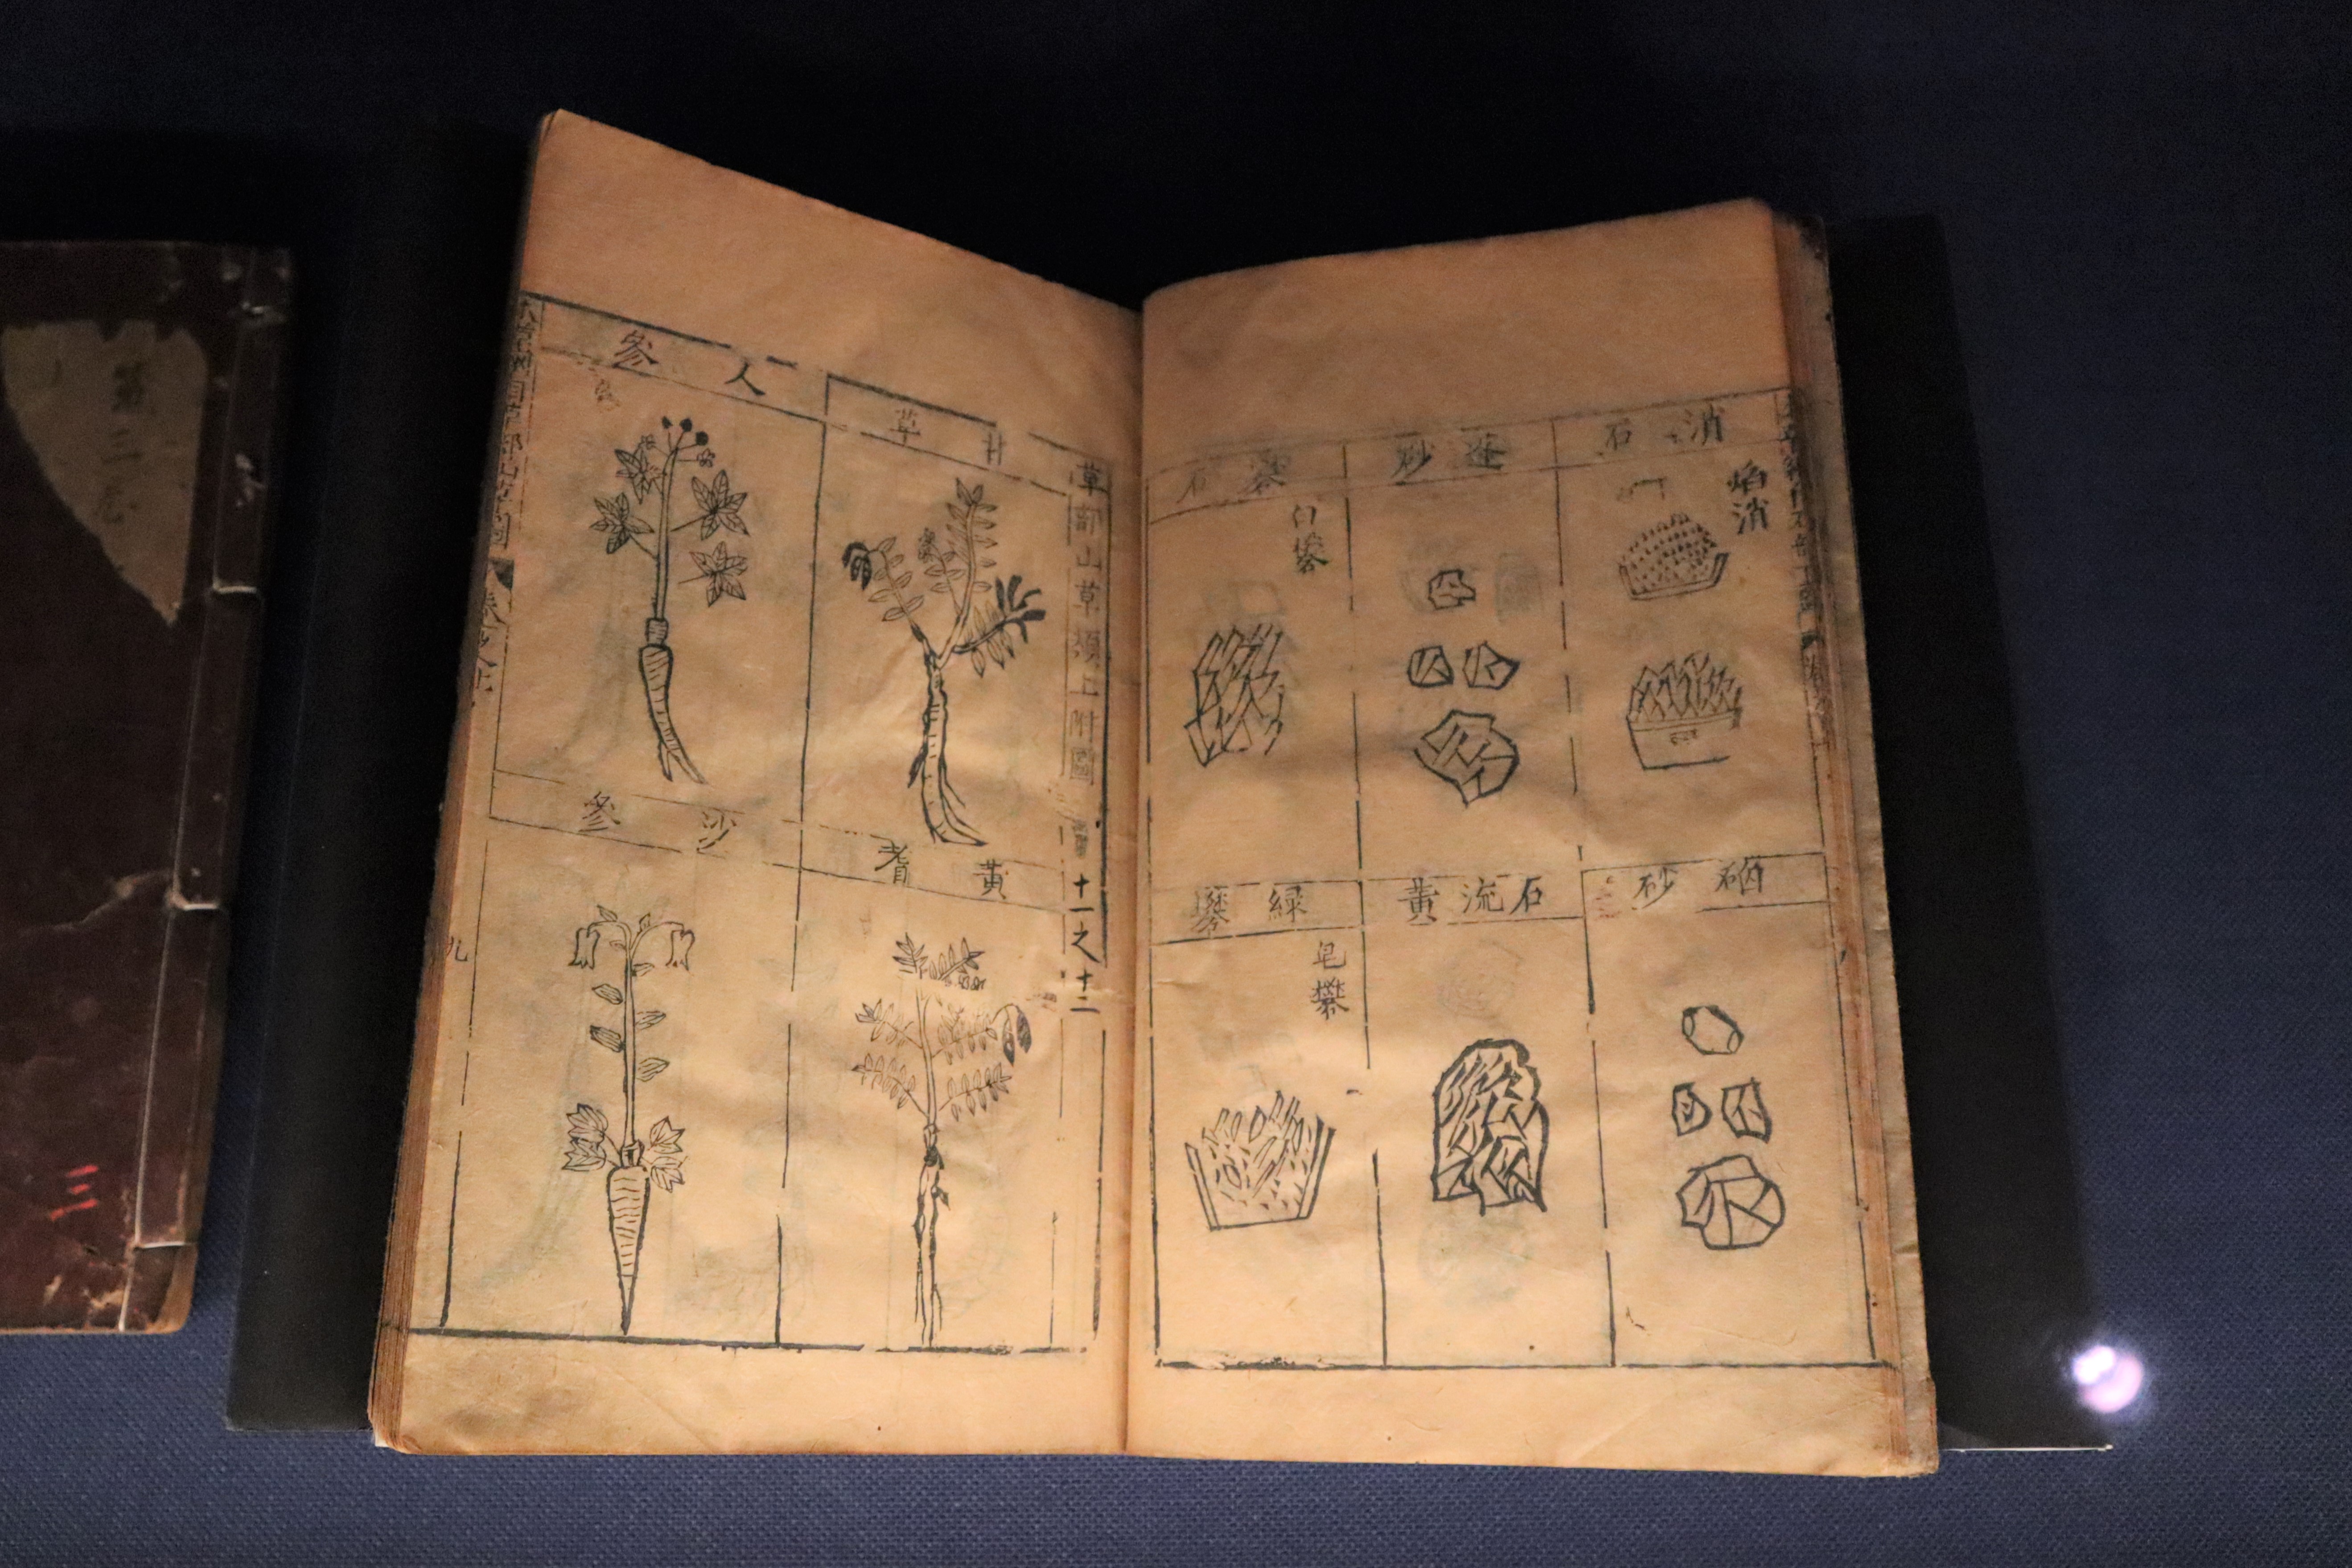 展示中の『本草綱目』（李時珍撰　1596（万暦24）年刊）。右のページには鉱物がまとめられている。